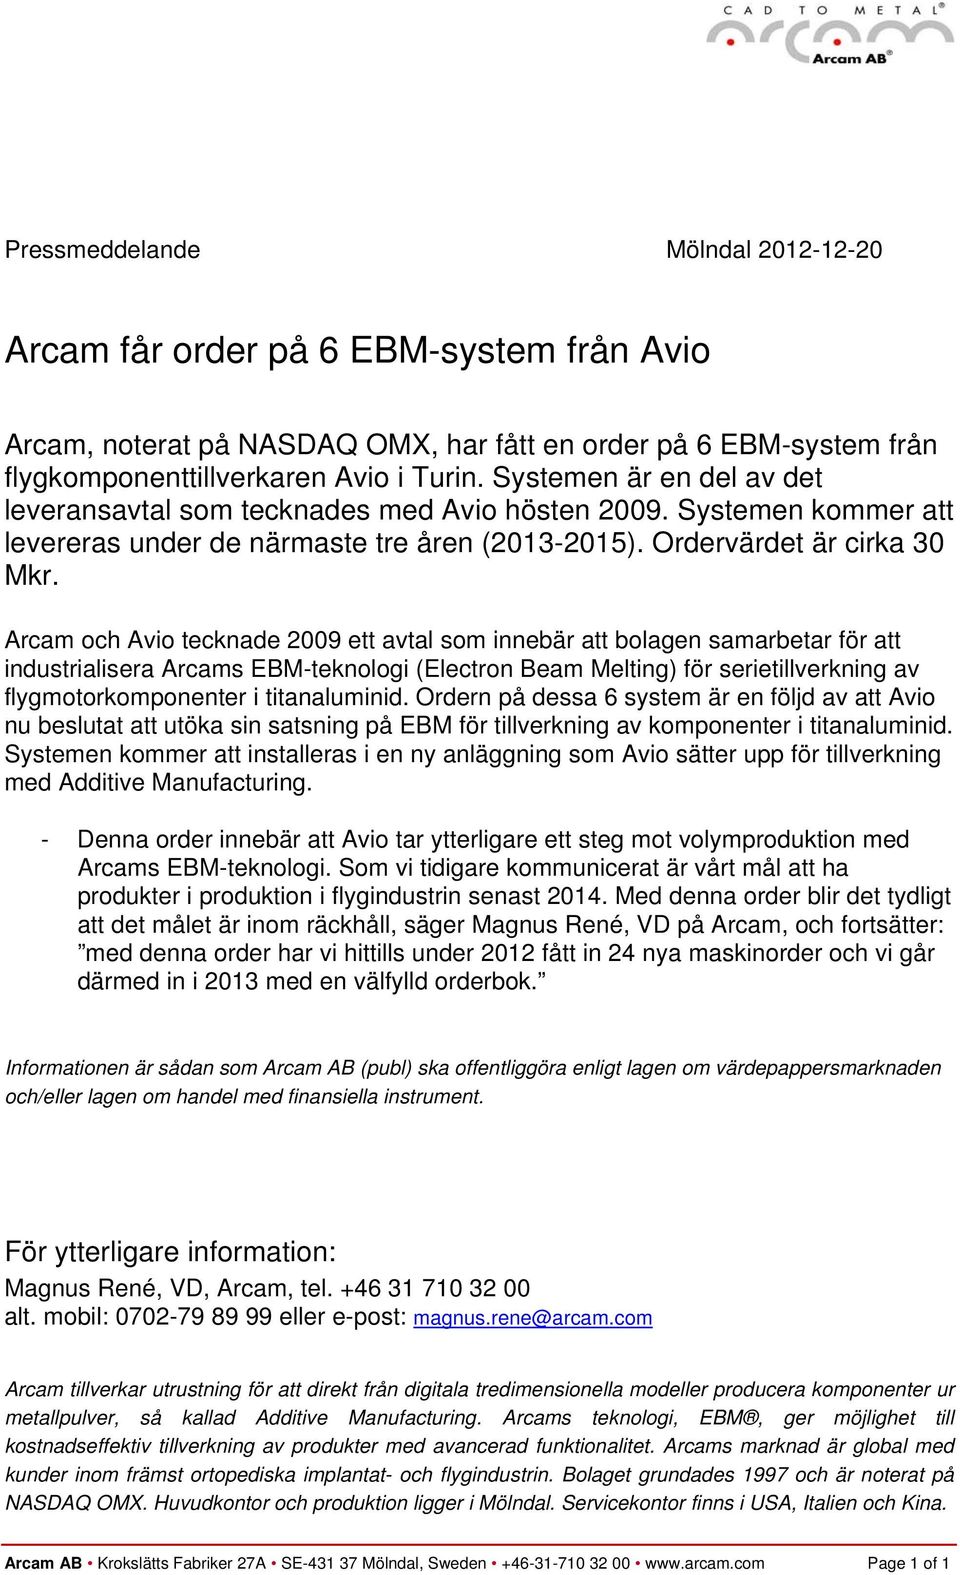 Arcam och Avio tecknade 2009 ett avtal som innebär att bolagen samarbetar för att industrialisera Arcams EBM-teknologi (Electron Beam Melting) för serietillverkning av flygmotorkomponenter i